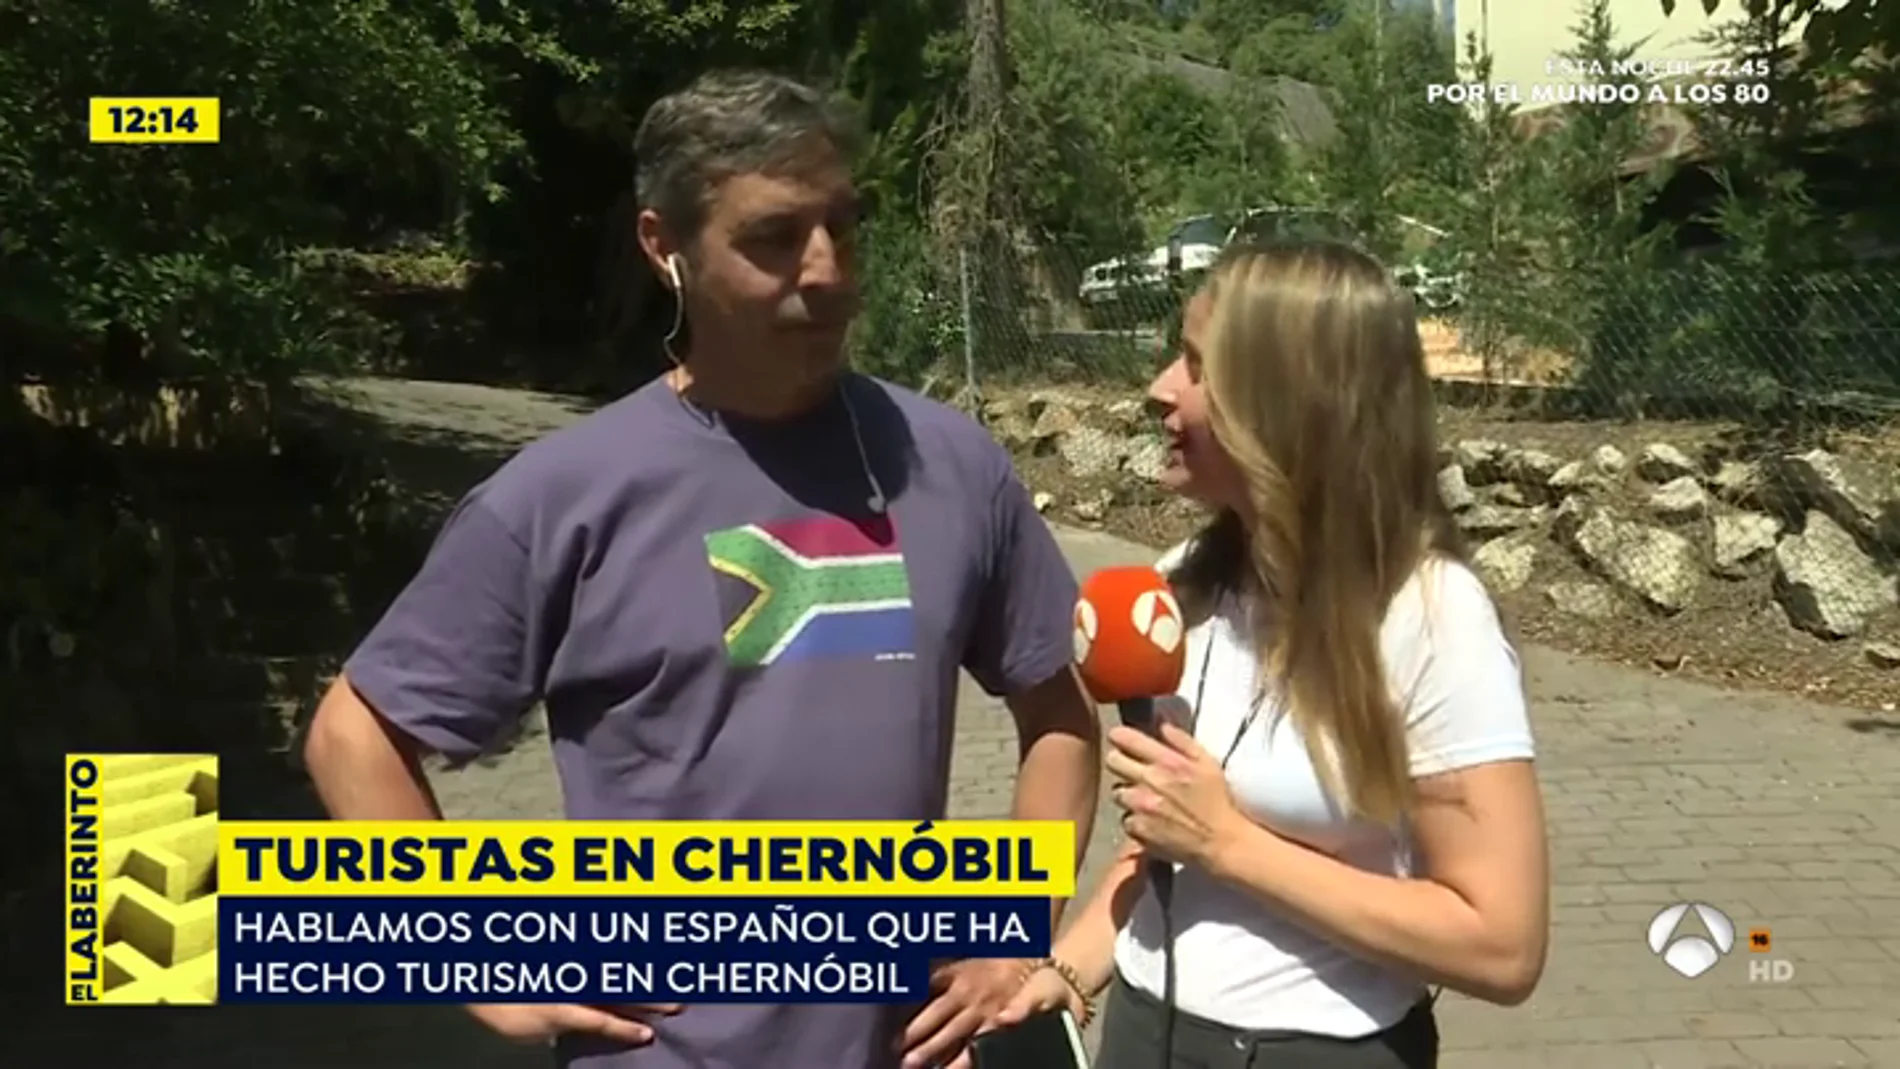 Héctor, turista de Chernóbil: "Asumo el riesgo, nadie me ha obligado a ir allí"